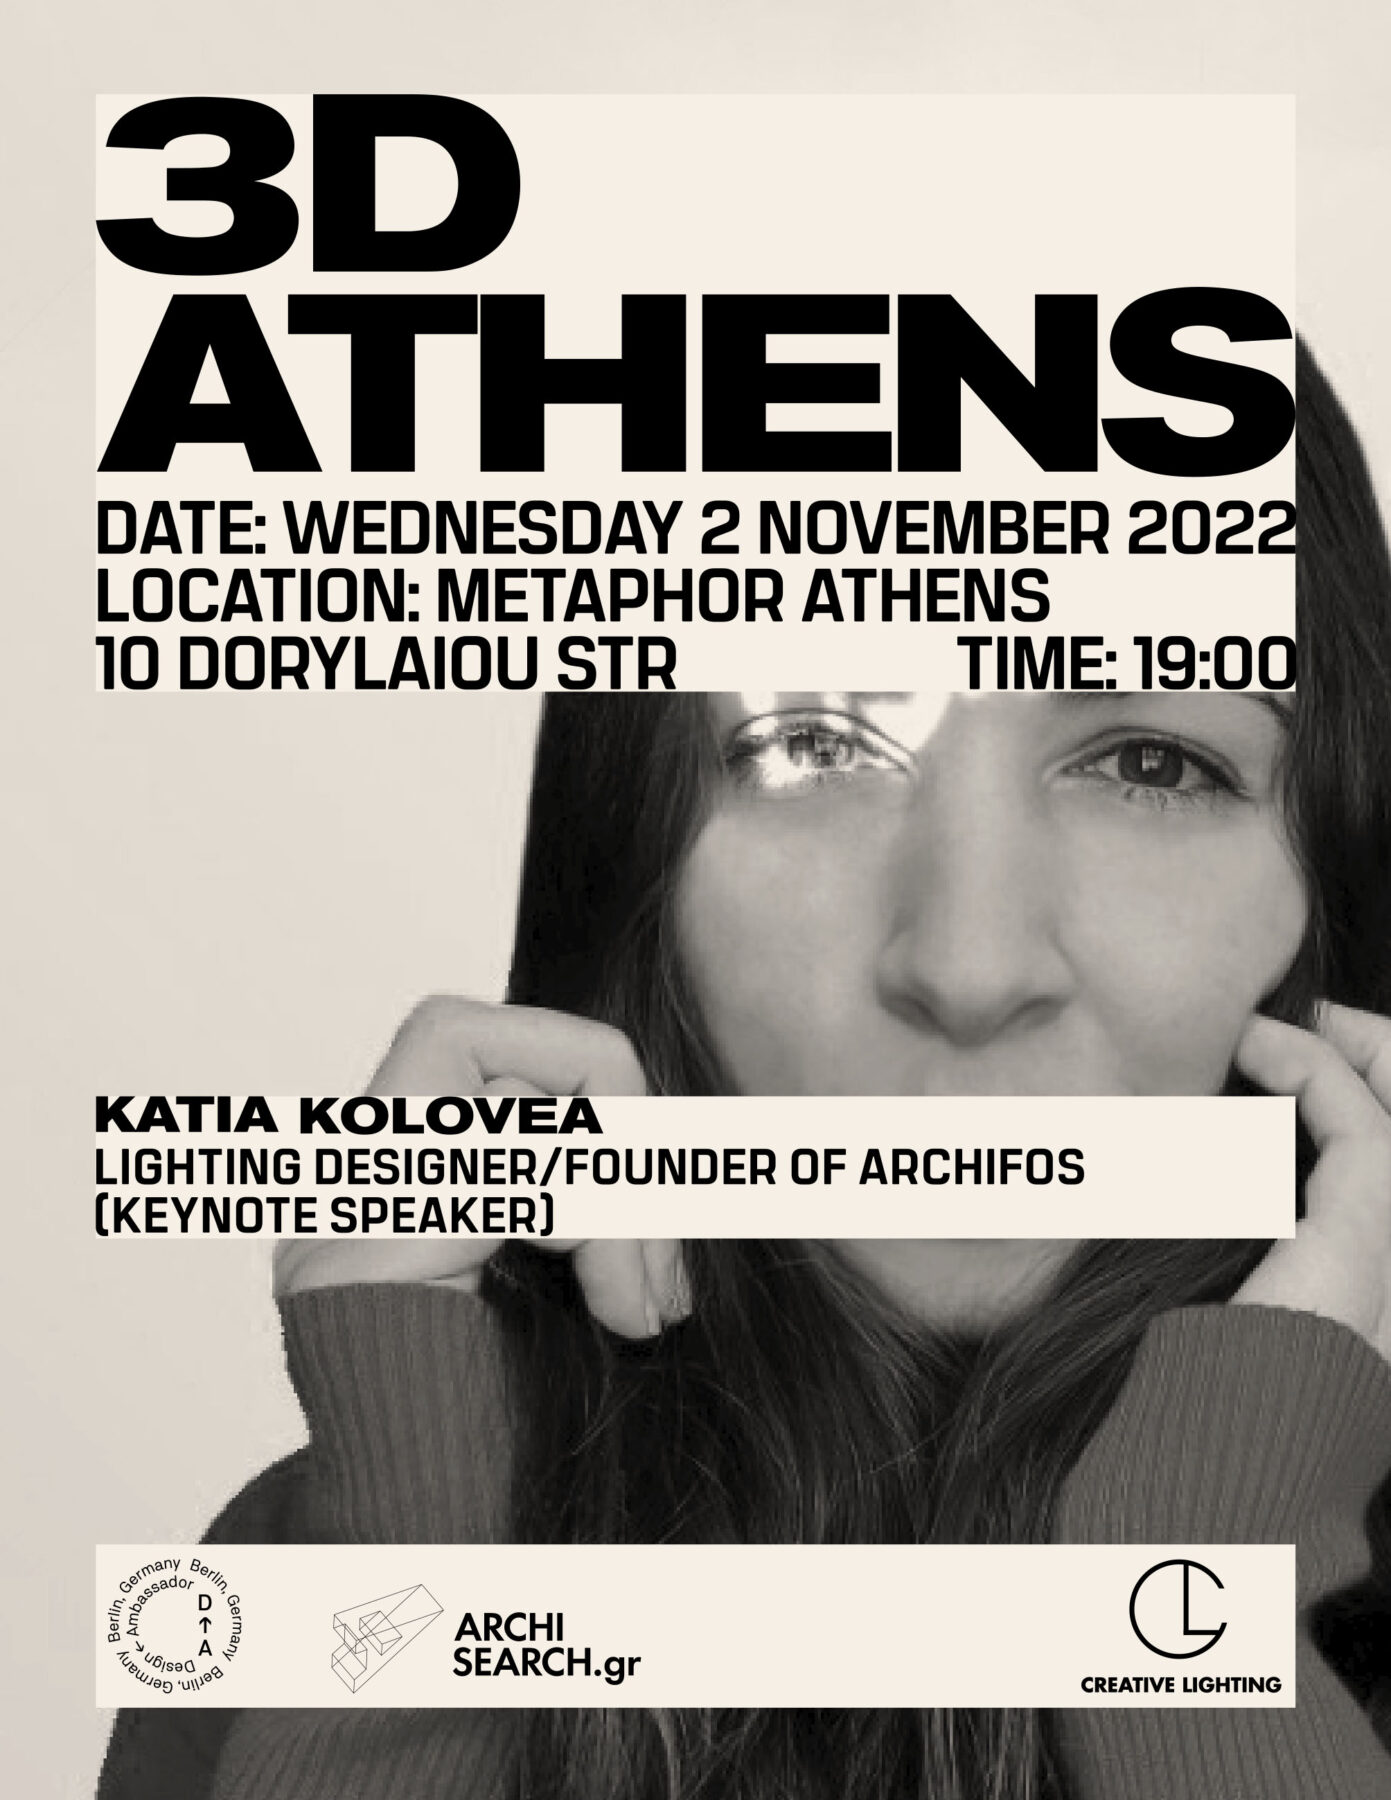 Archisearch 3D MEETUP ATHENS at Metaphor Athens by Design Ambassador & Creative Lighting